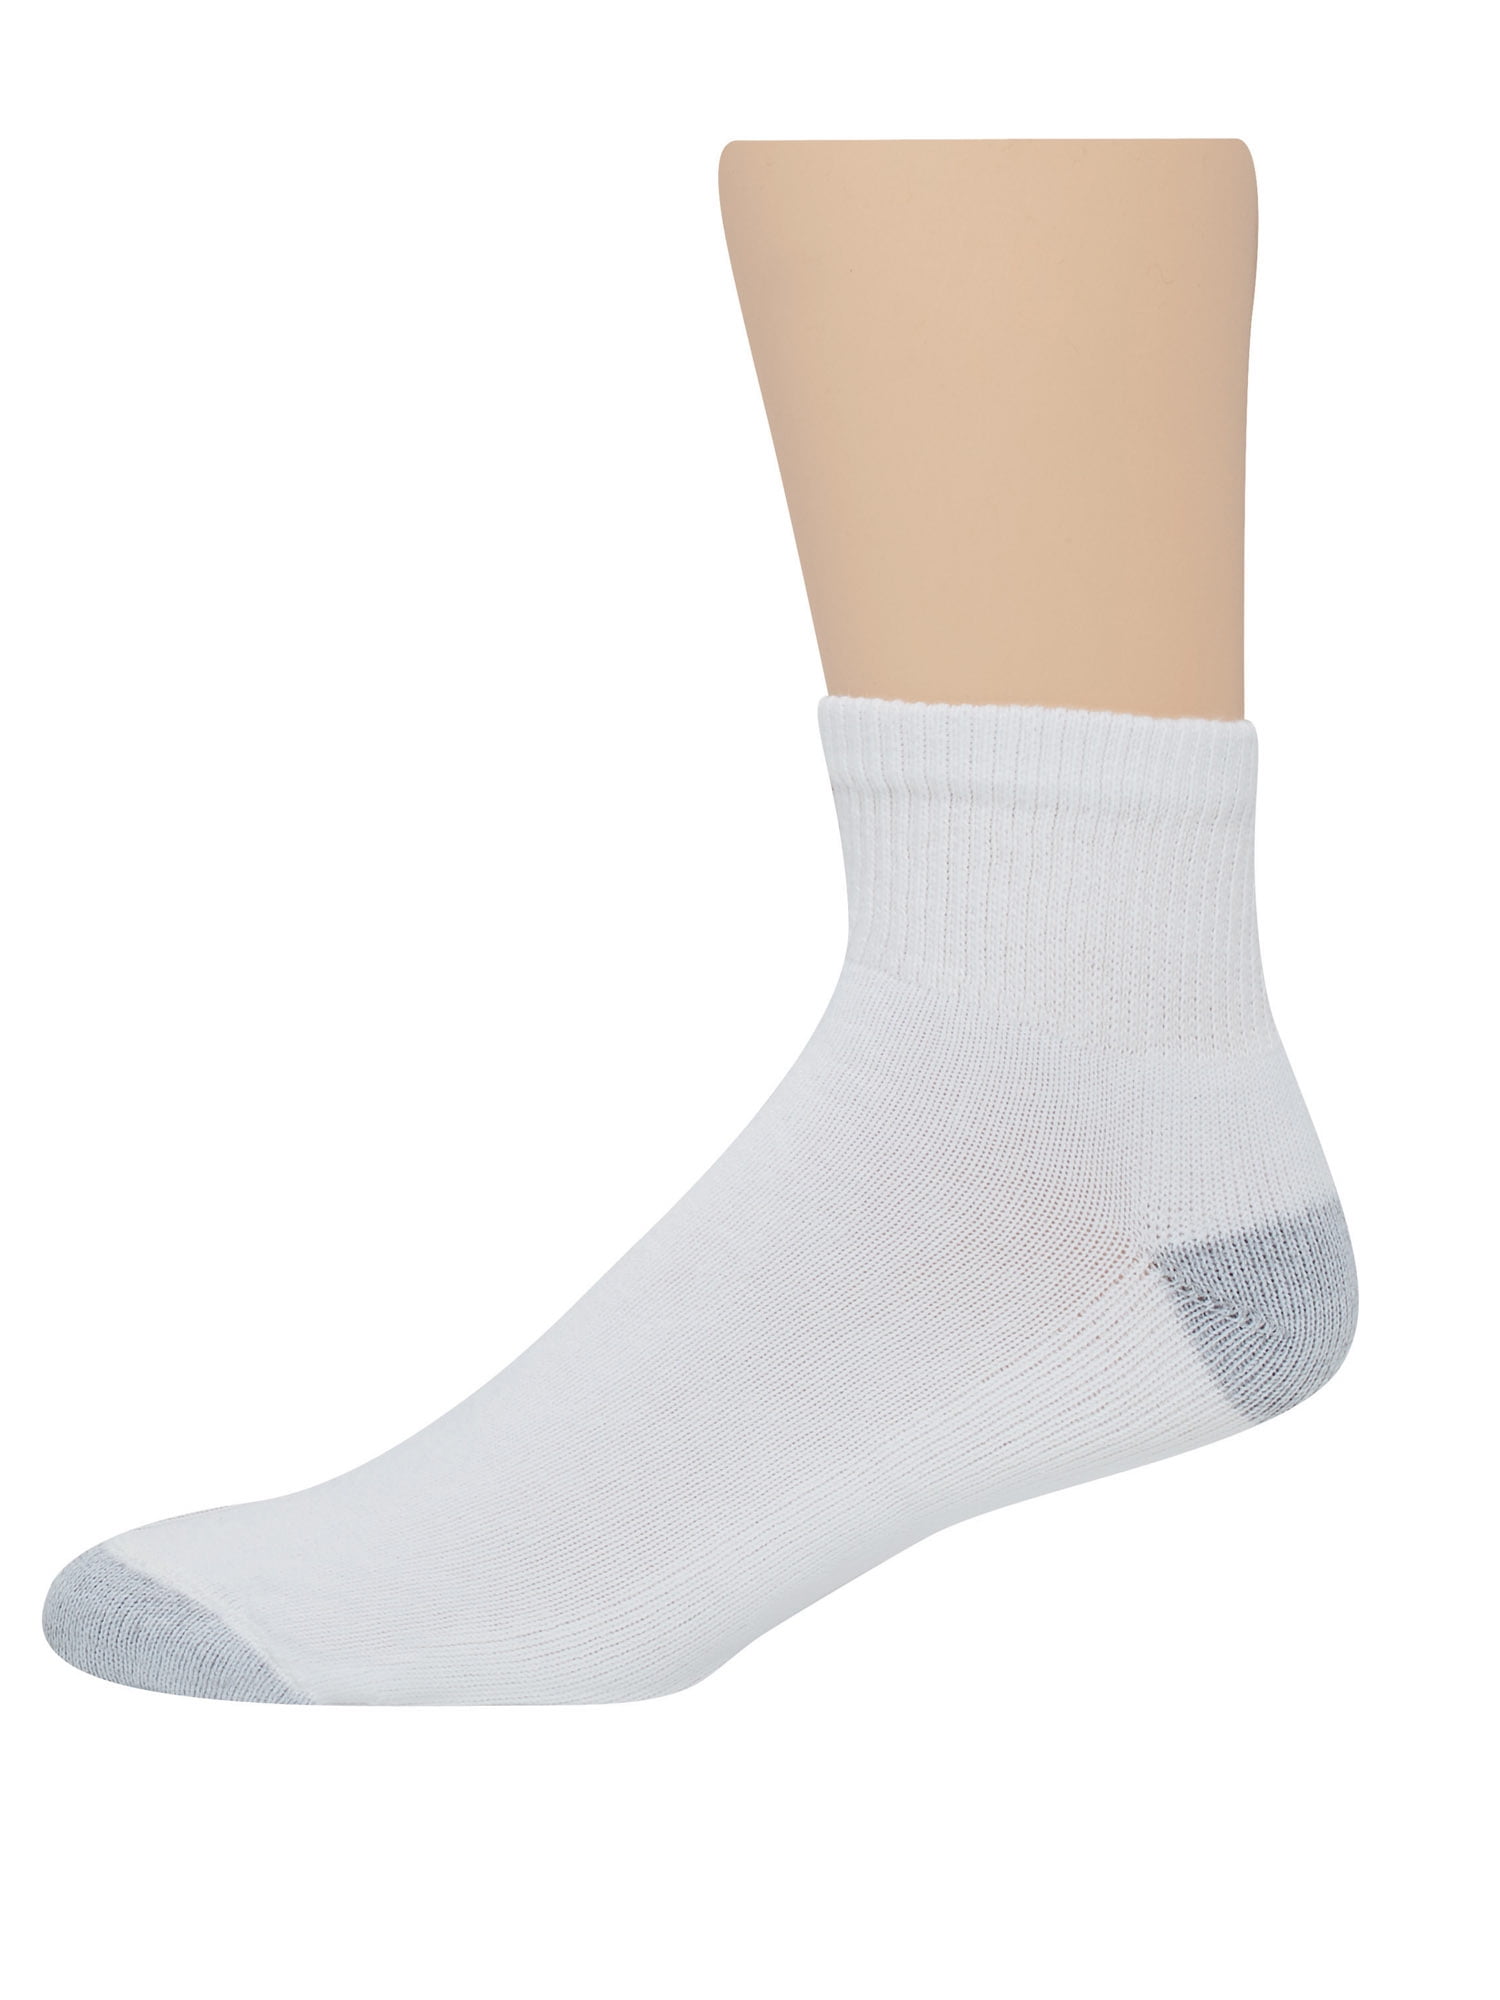 Hanes Hanes Mens Full Cushion White Ankle Socks 20 Pack